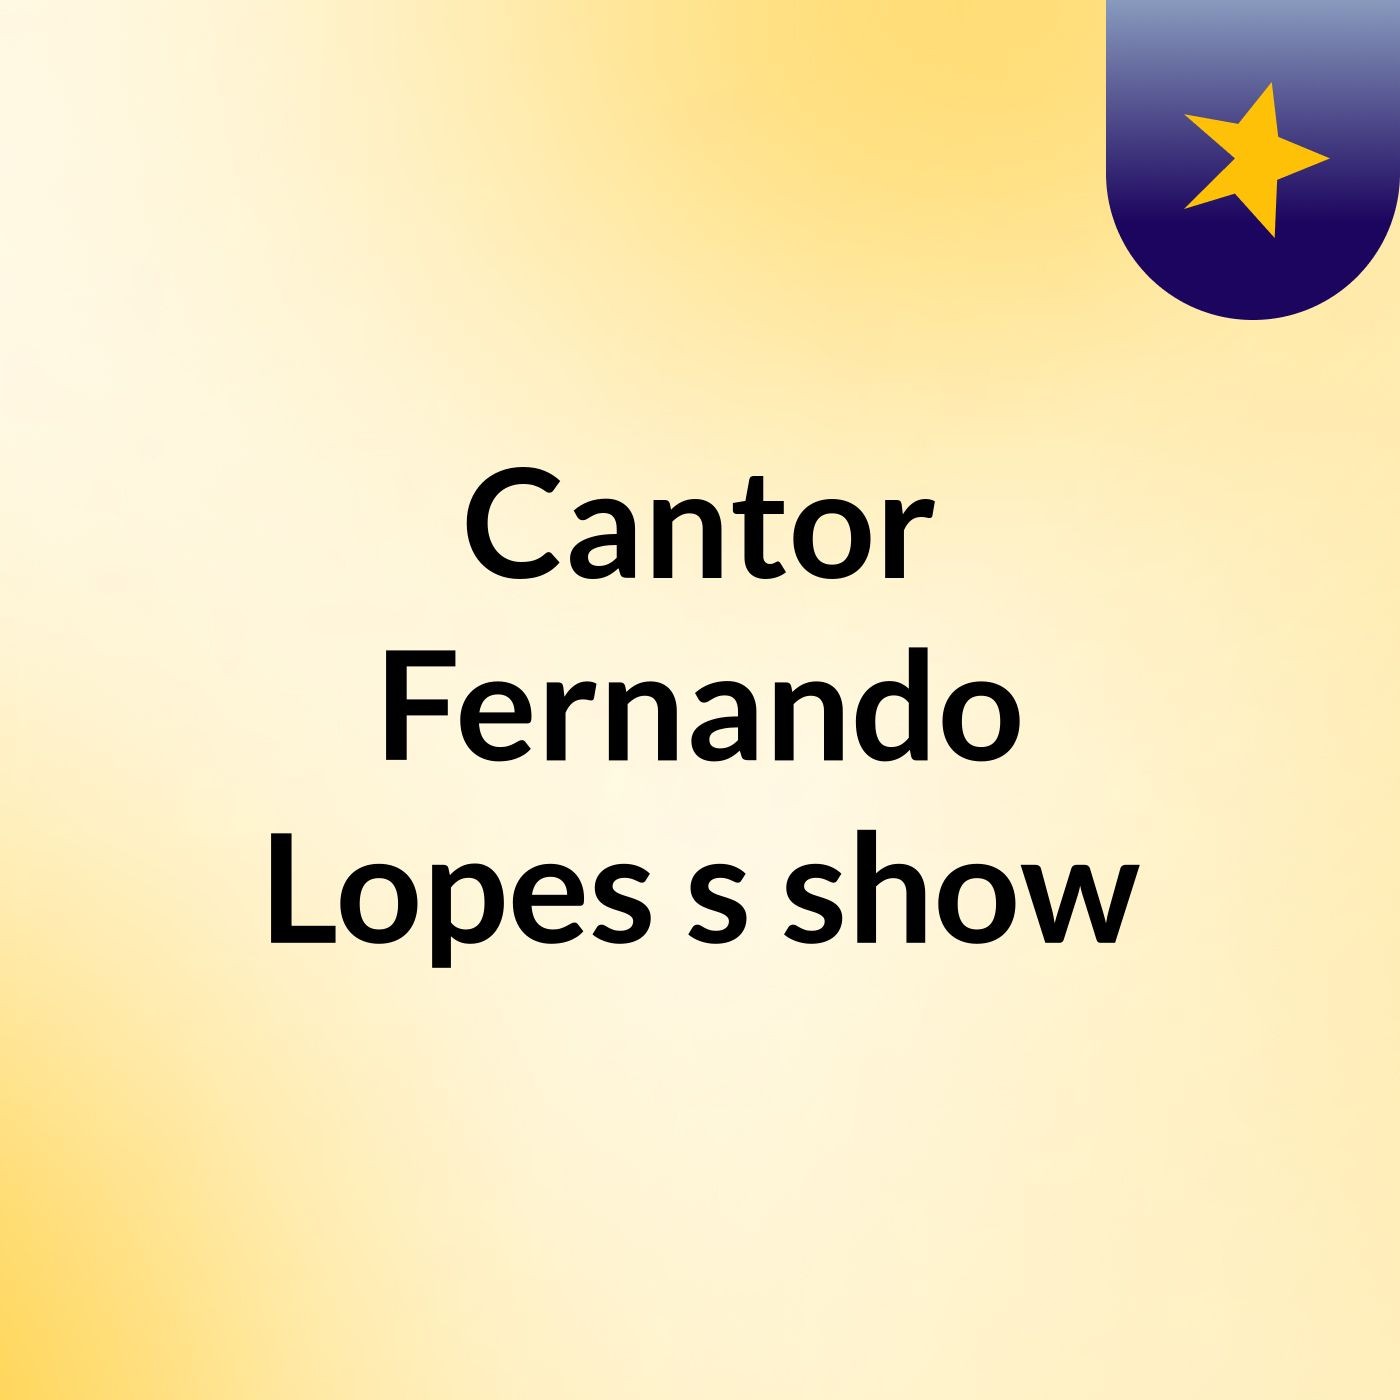 Pé De Vitórias Cantor Fernando Lopes's show